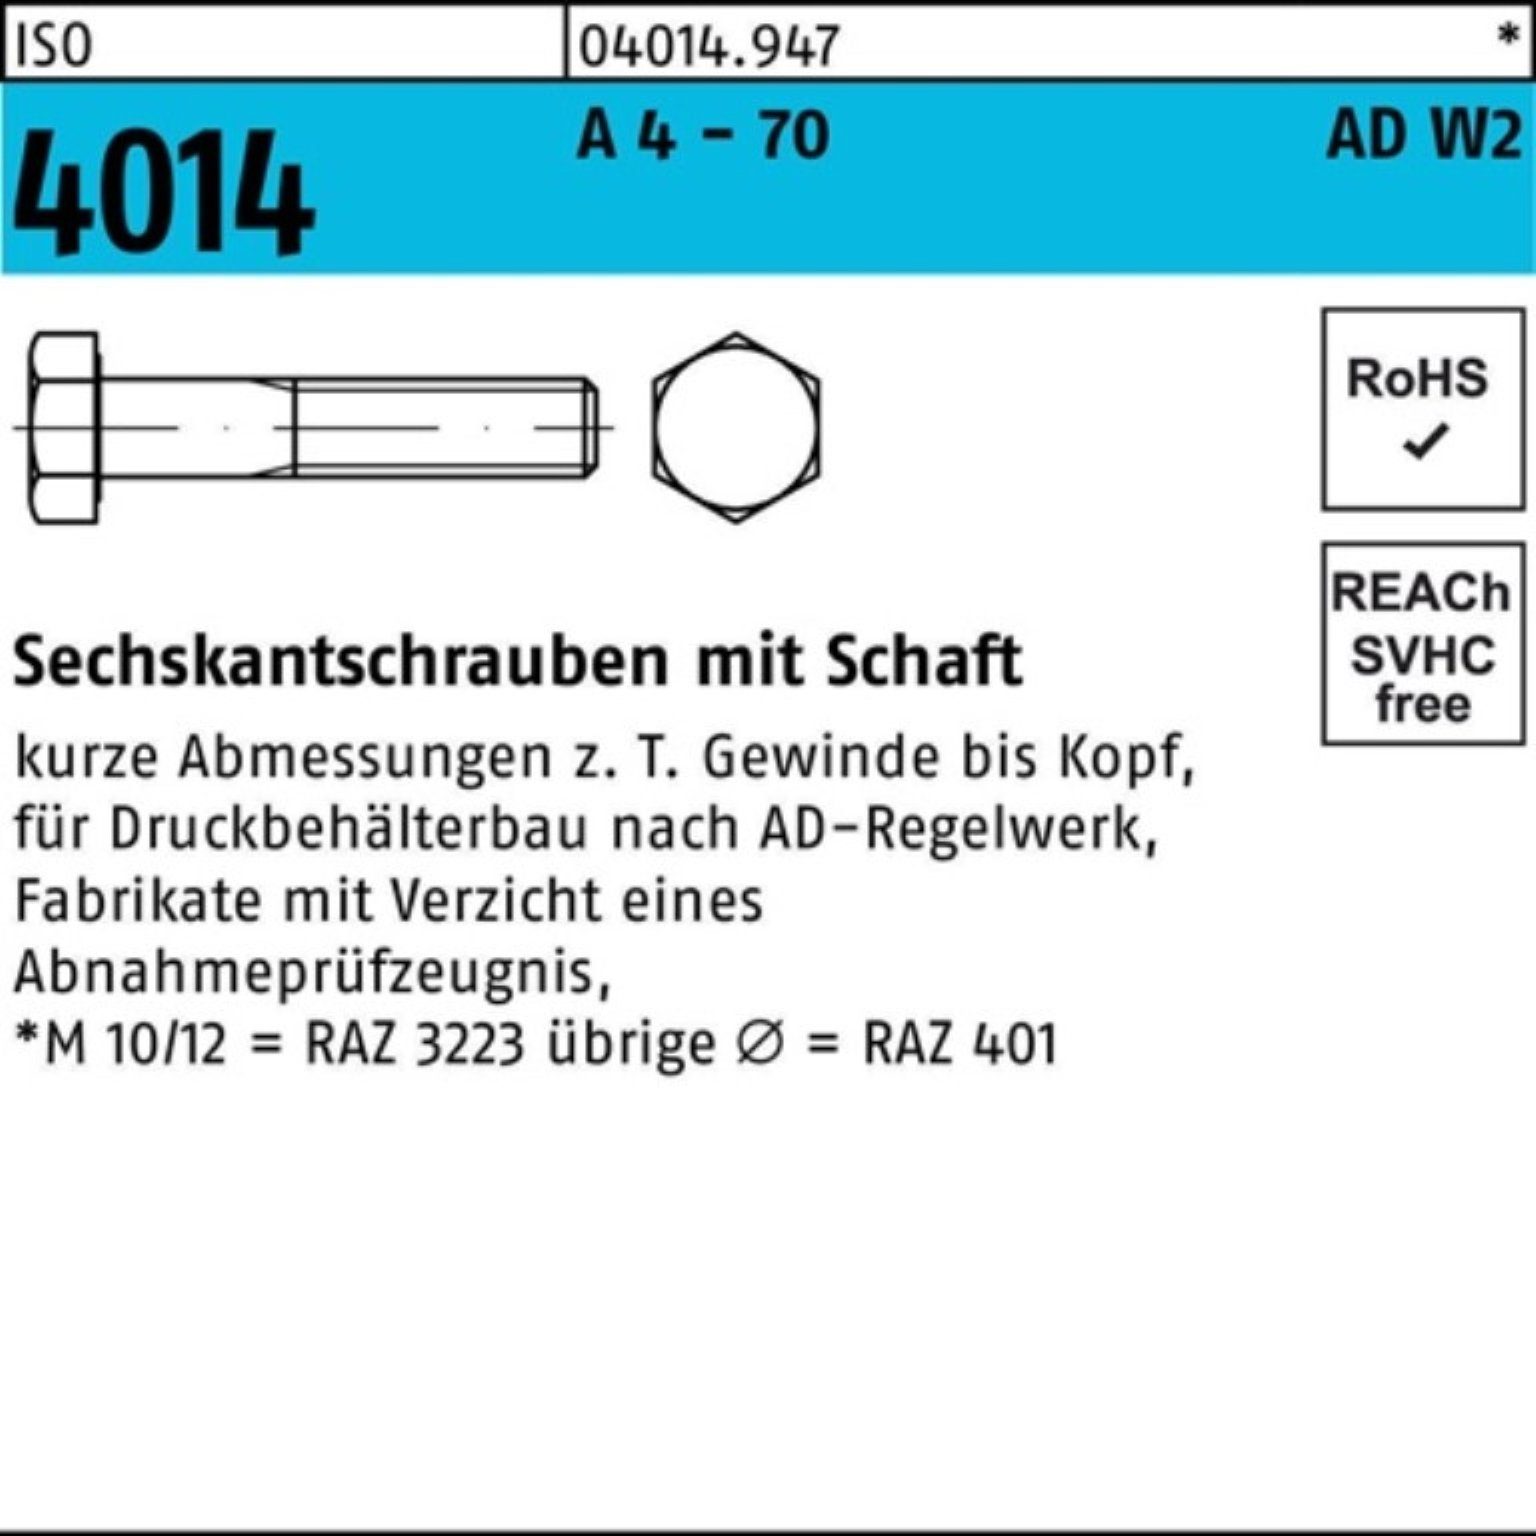 Bufab Sechskantschraube 100er Pack Sechskantschraube ISO 4014 Schaft M12x 150 A 4 - 70 AD-W2 1